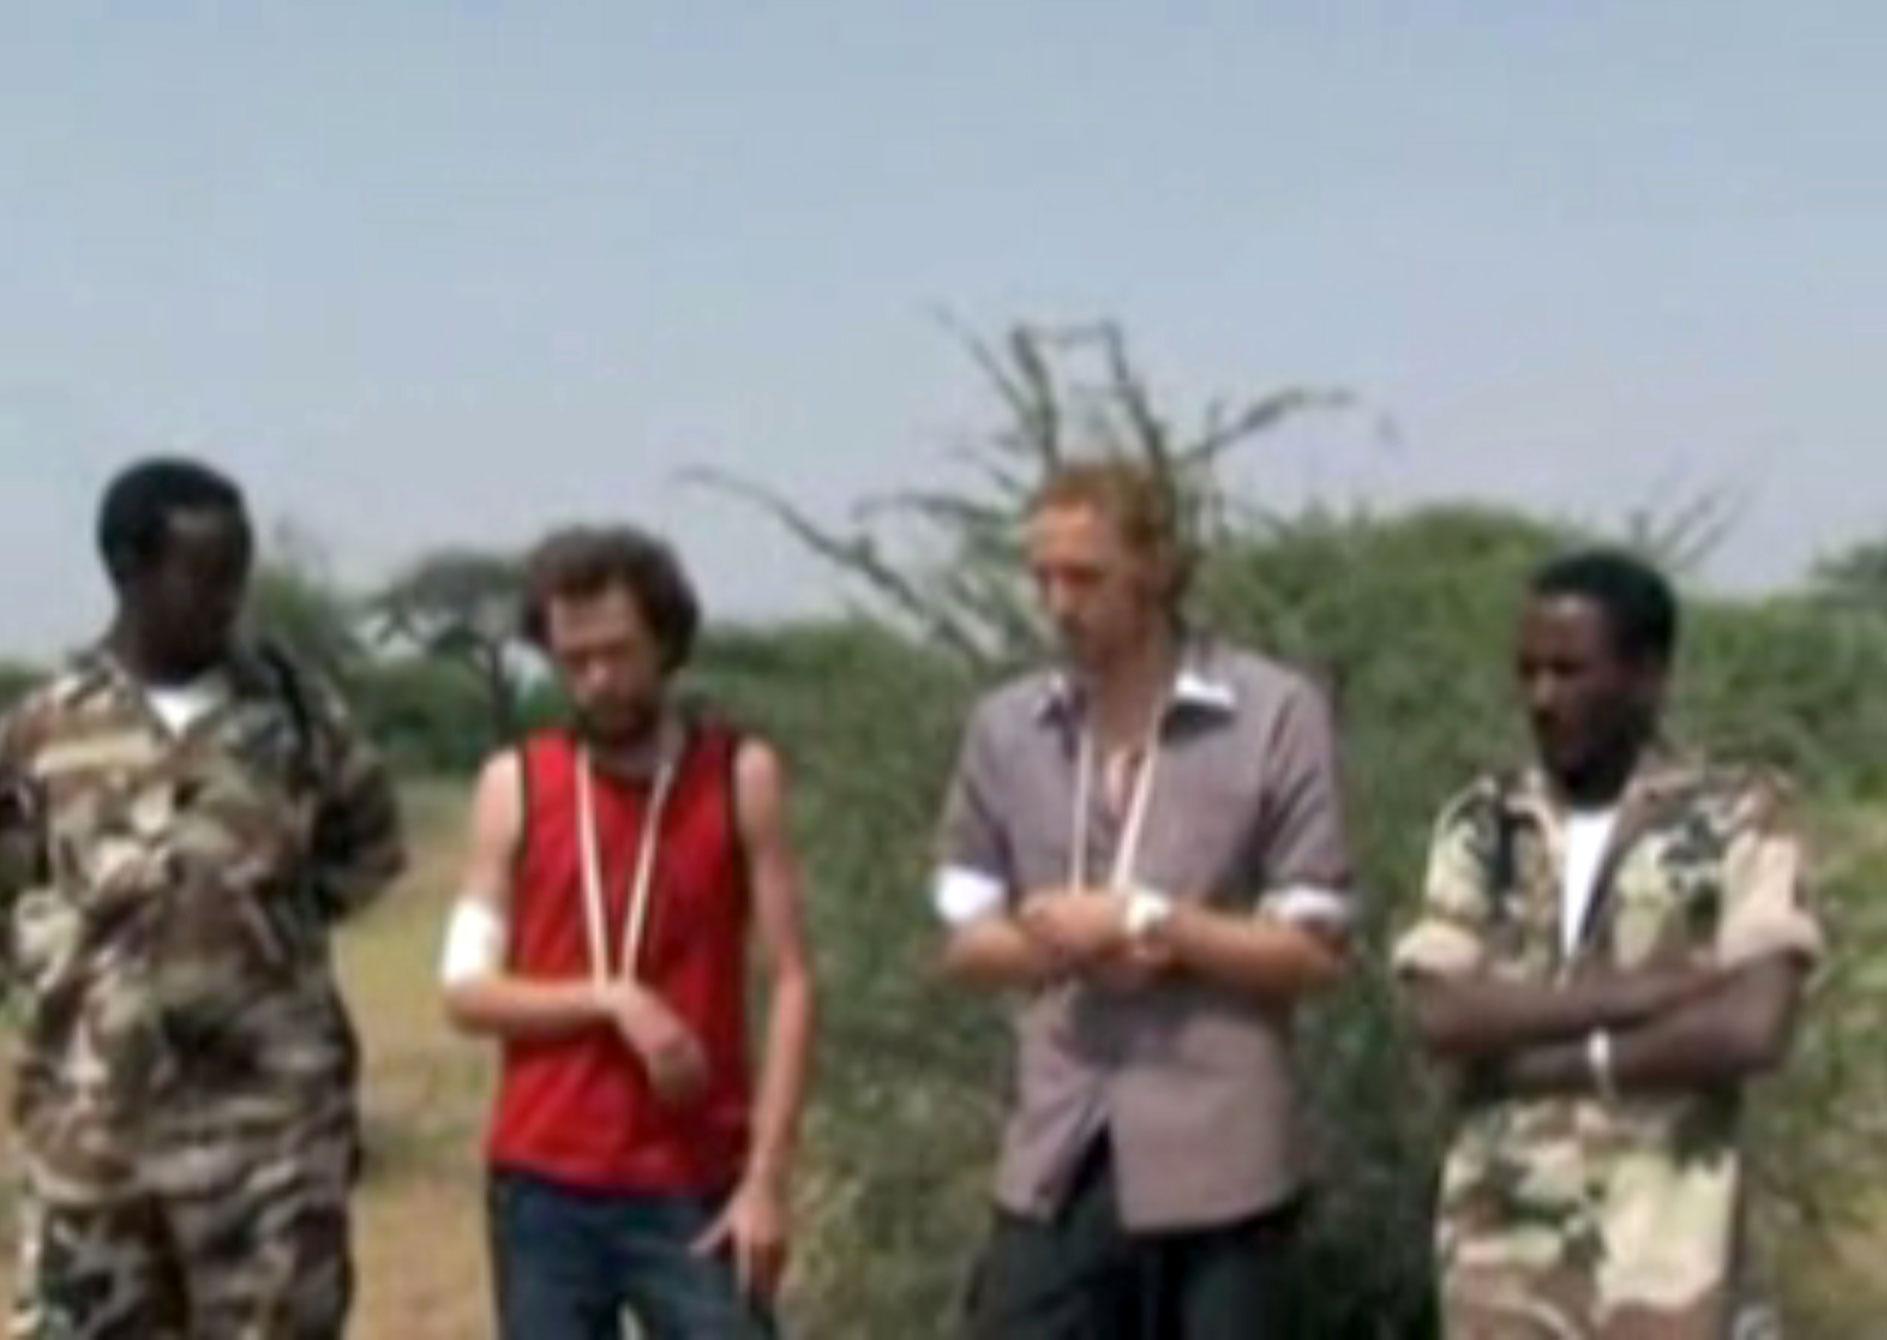 Johan Persson och Martin Schibbye greps den 1 juli 2011 av Etiopisk militär misstänkta för terrorism.